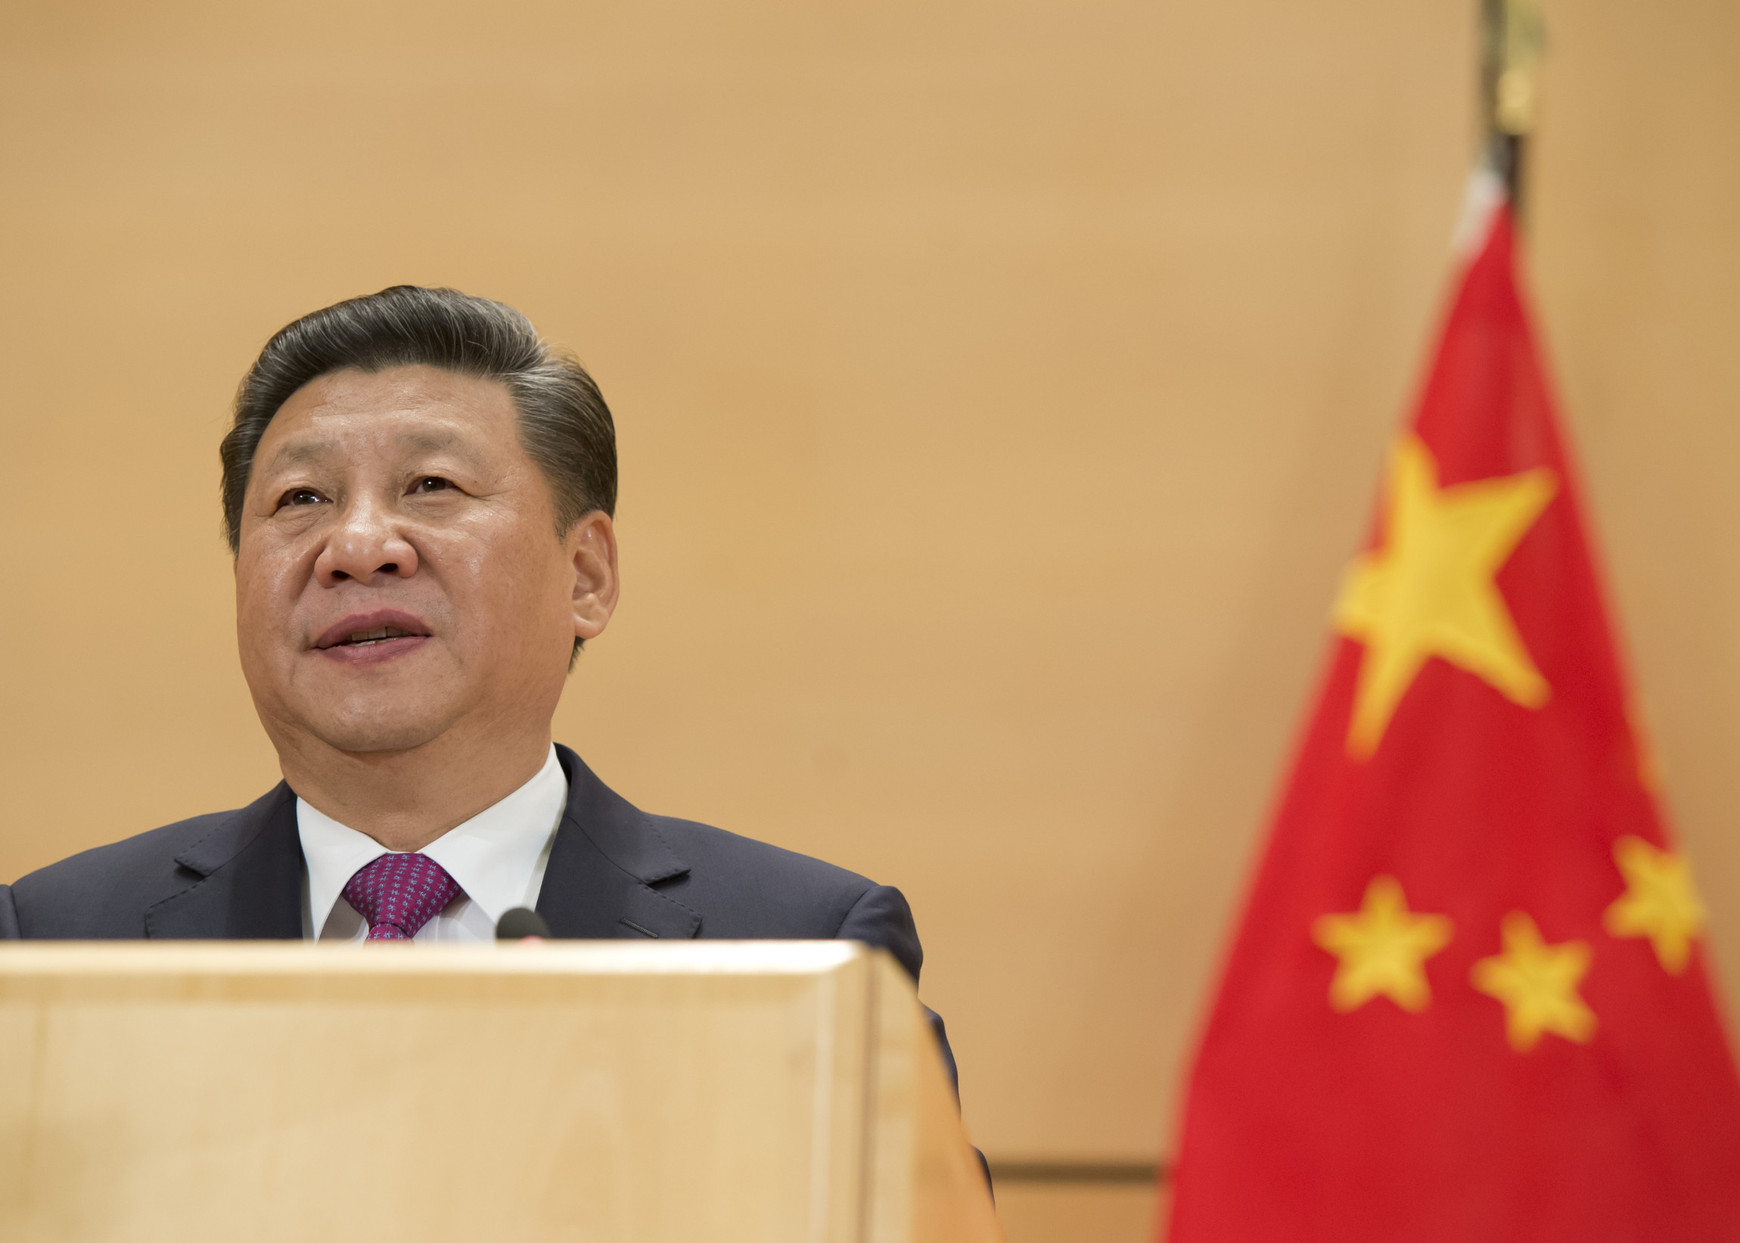 Xi Jinping, président de la République populaire de Chine, s'adresse à un bureau des Nations unies à Genève. 18 janvier 2017. Source : UN Photo / Jean-Marc Ferré Voitures électriques, un bras de fer entre l’UE et la Chine